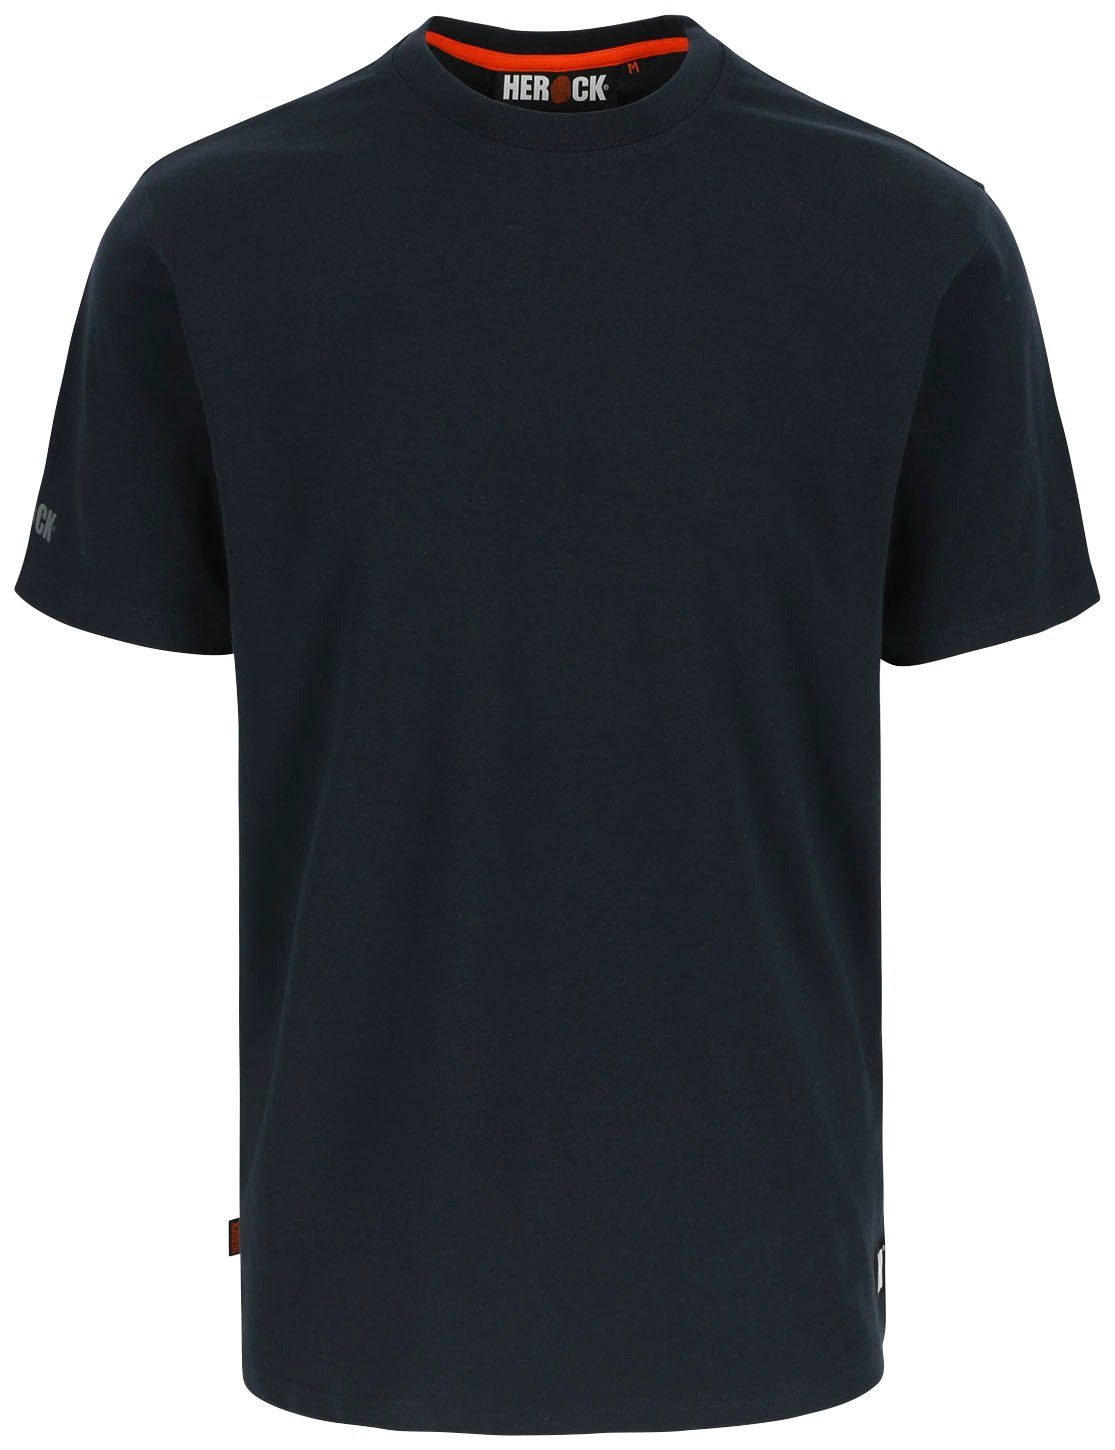 Herock T-Shirt Callius T-Shirt kurze Ärmel Rundhalsausschnitt, kurze Ärmel, Herock®-Aufdruck, Rippstrickkragen blau